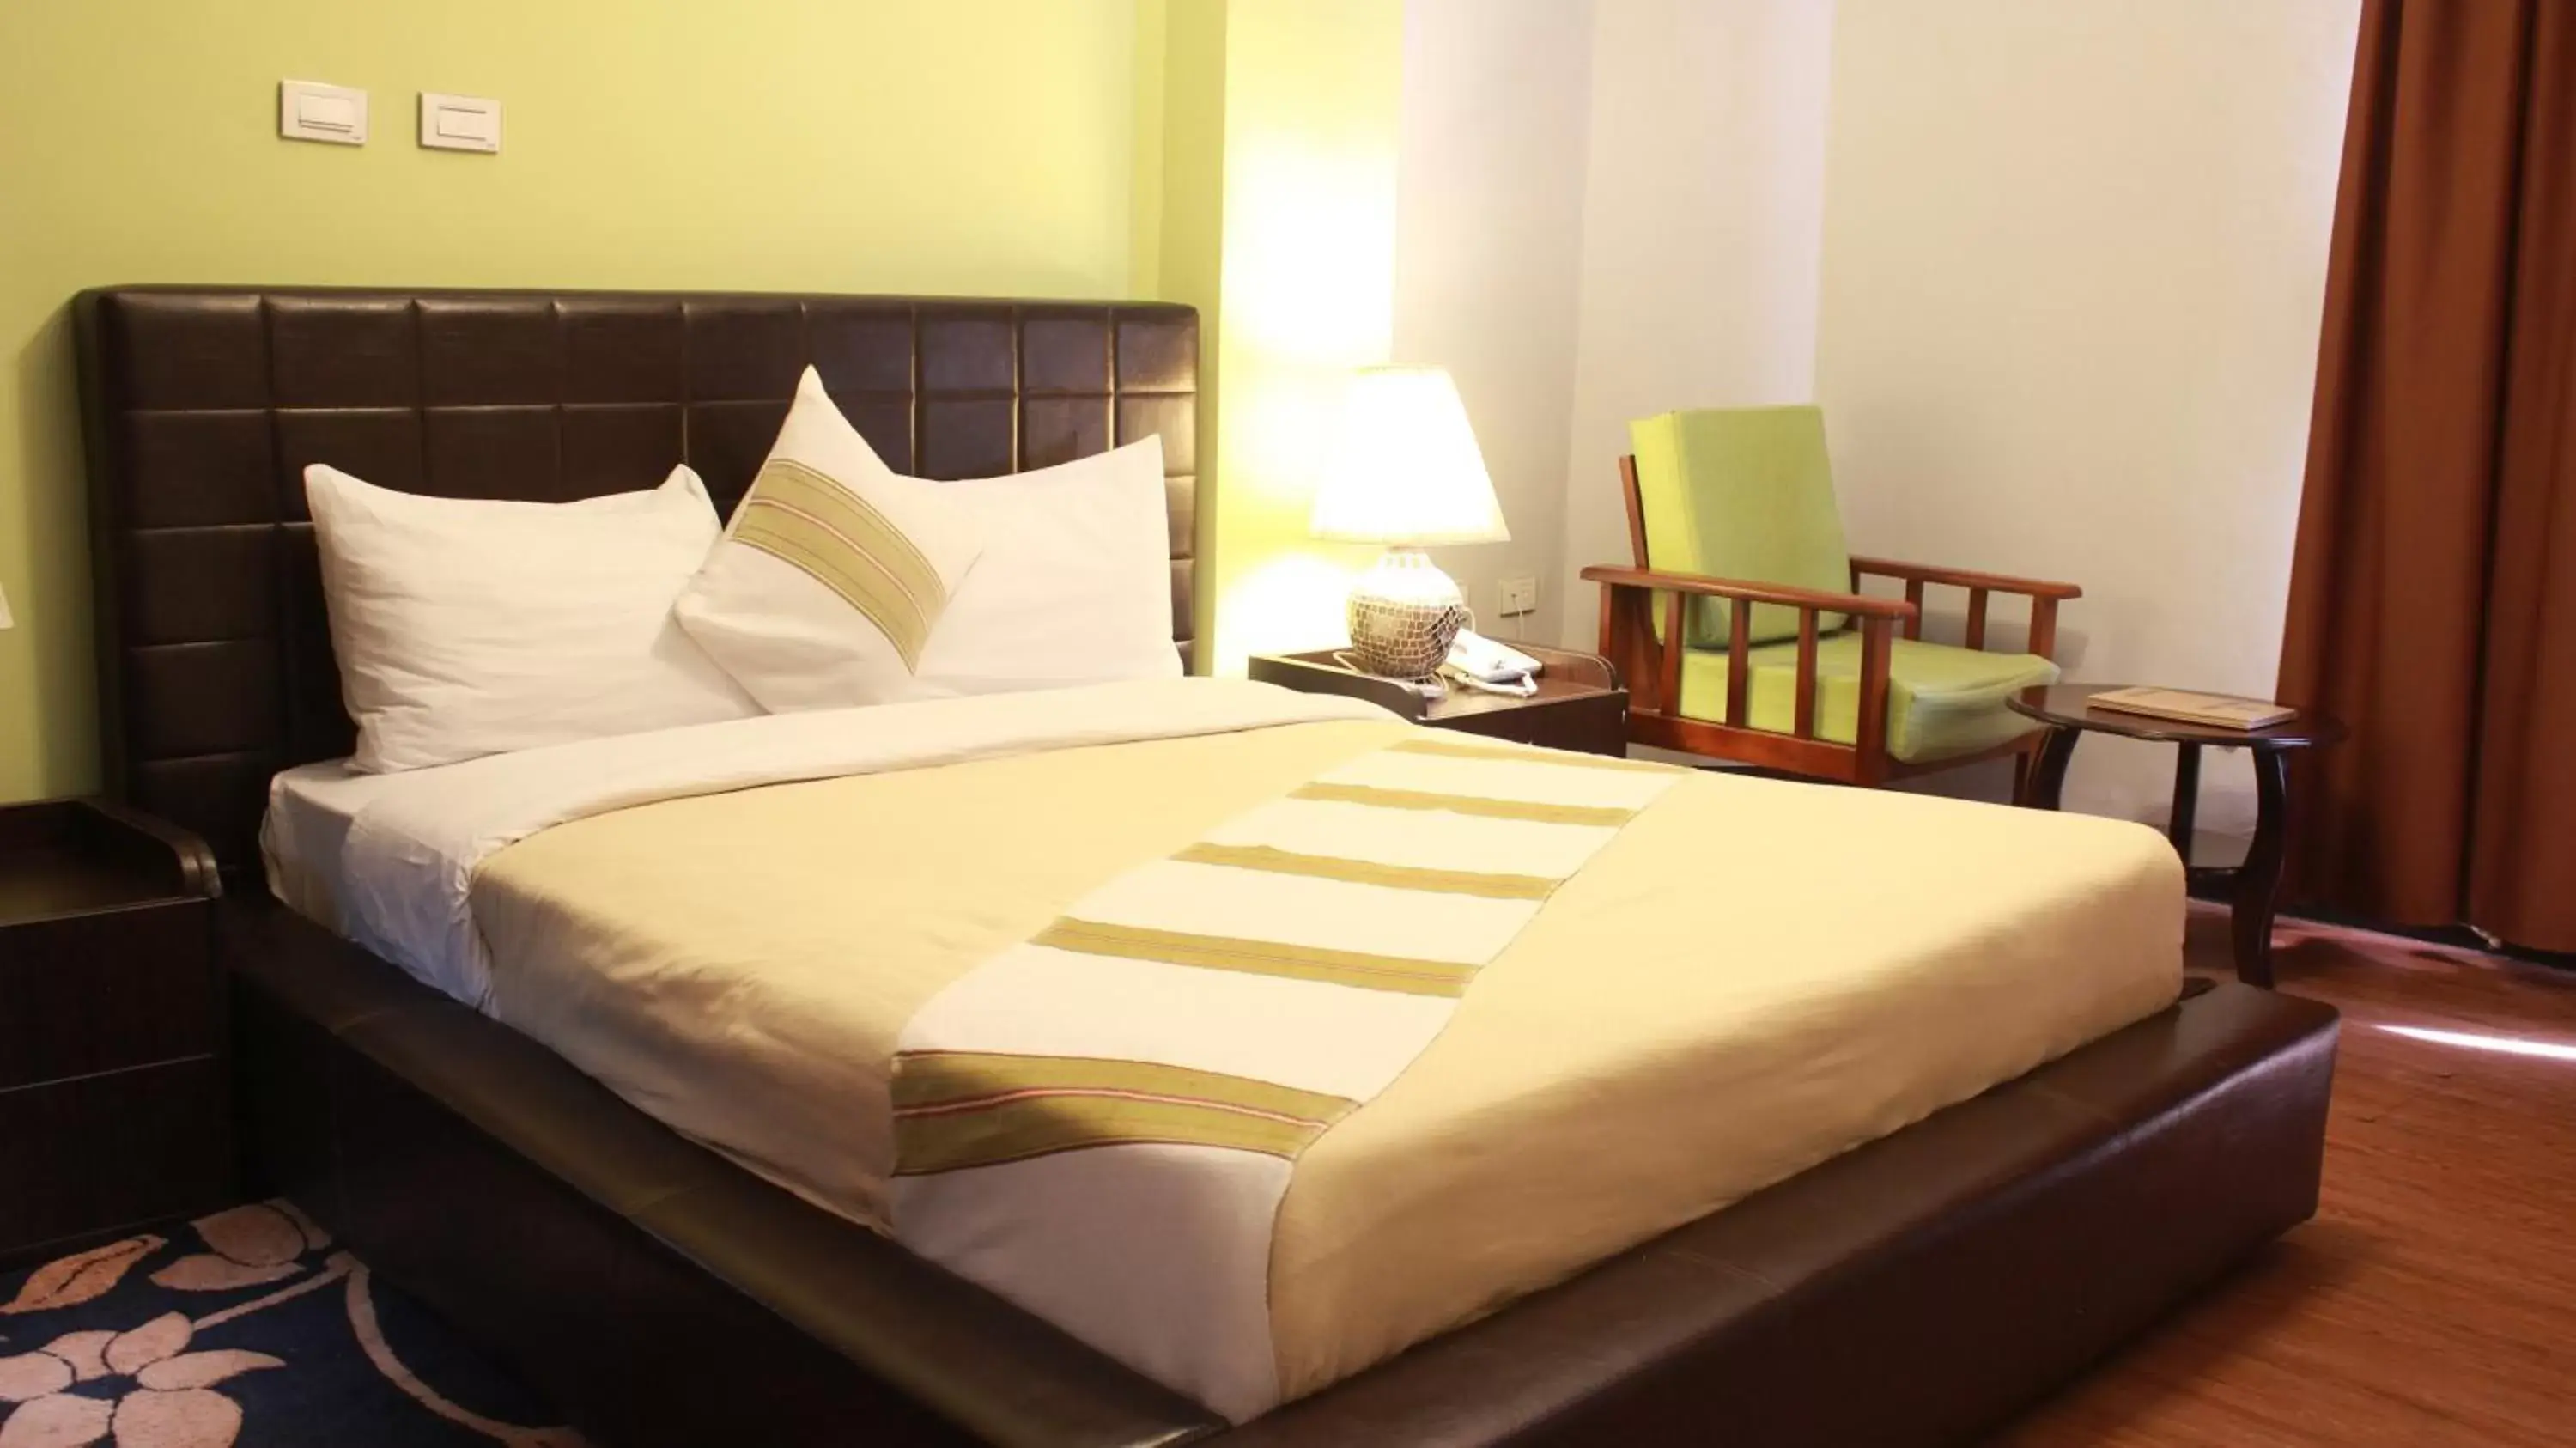 Bed in Hotel Lobelia